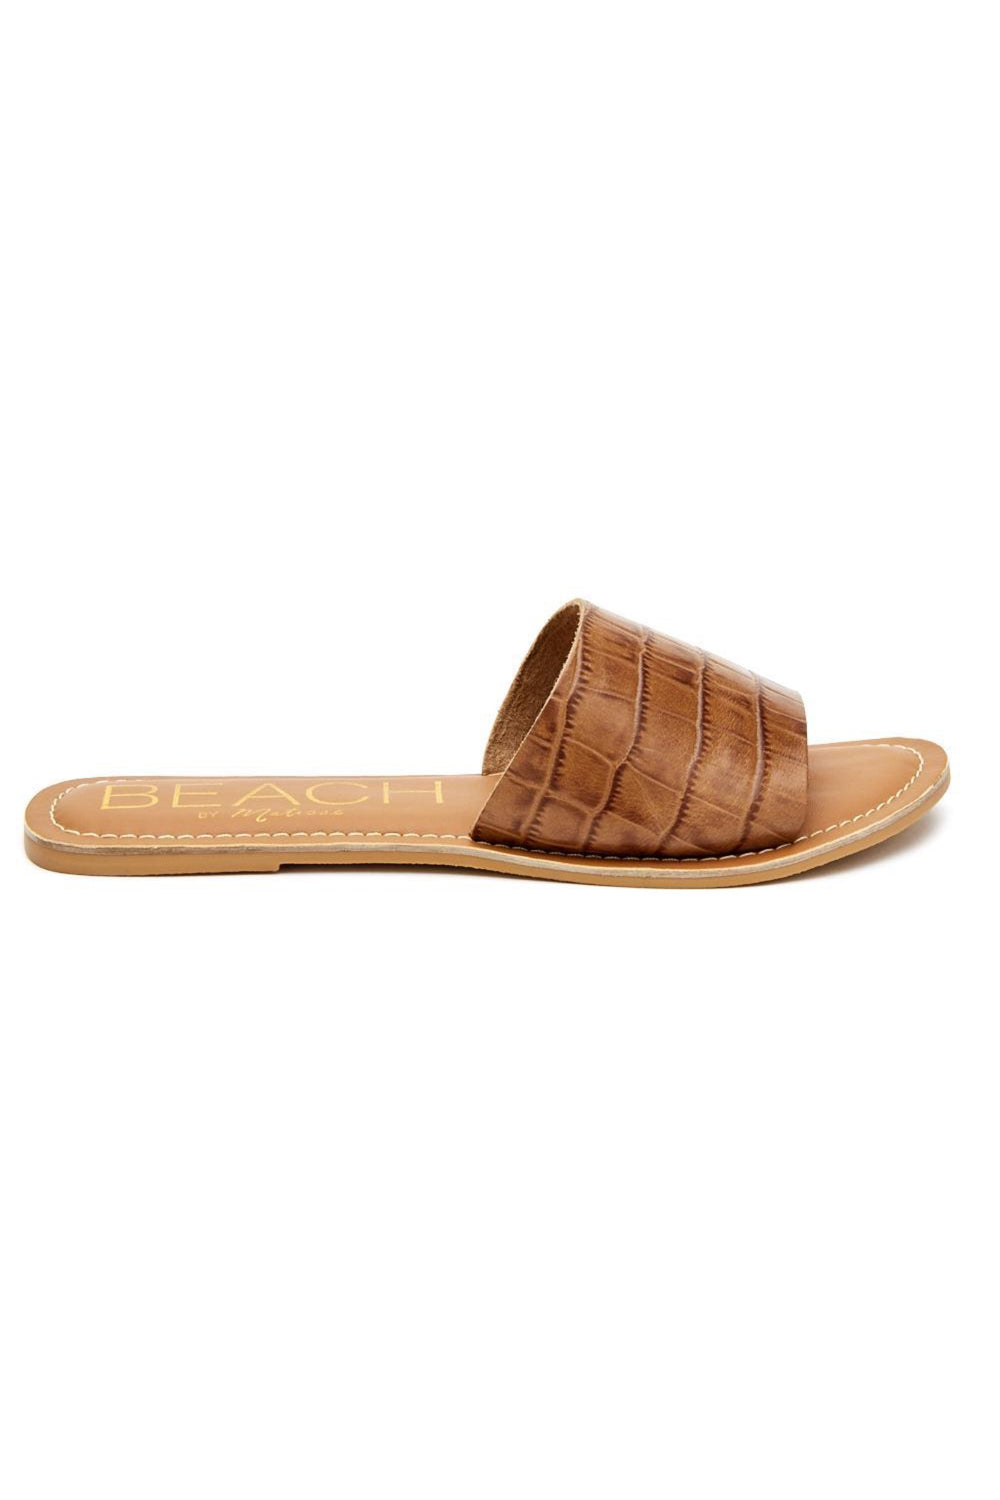 Tan Croc Cabana Sandal